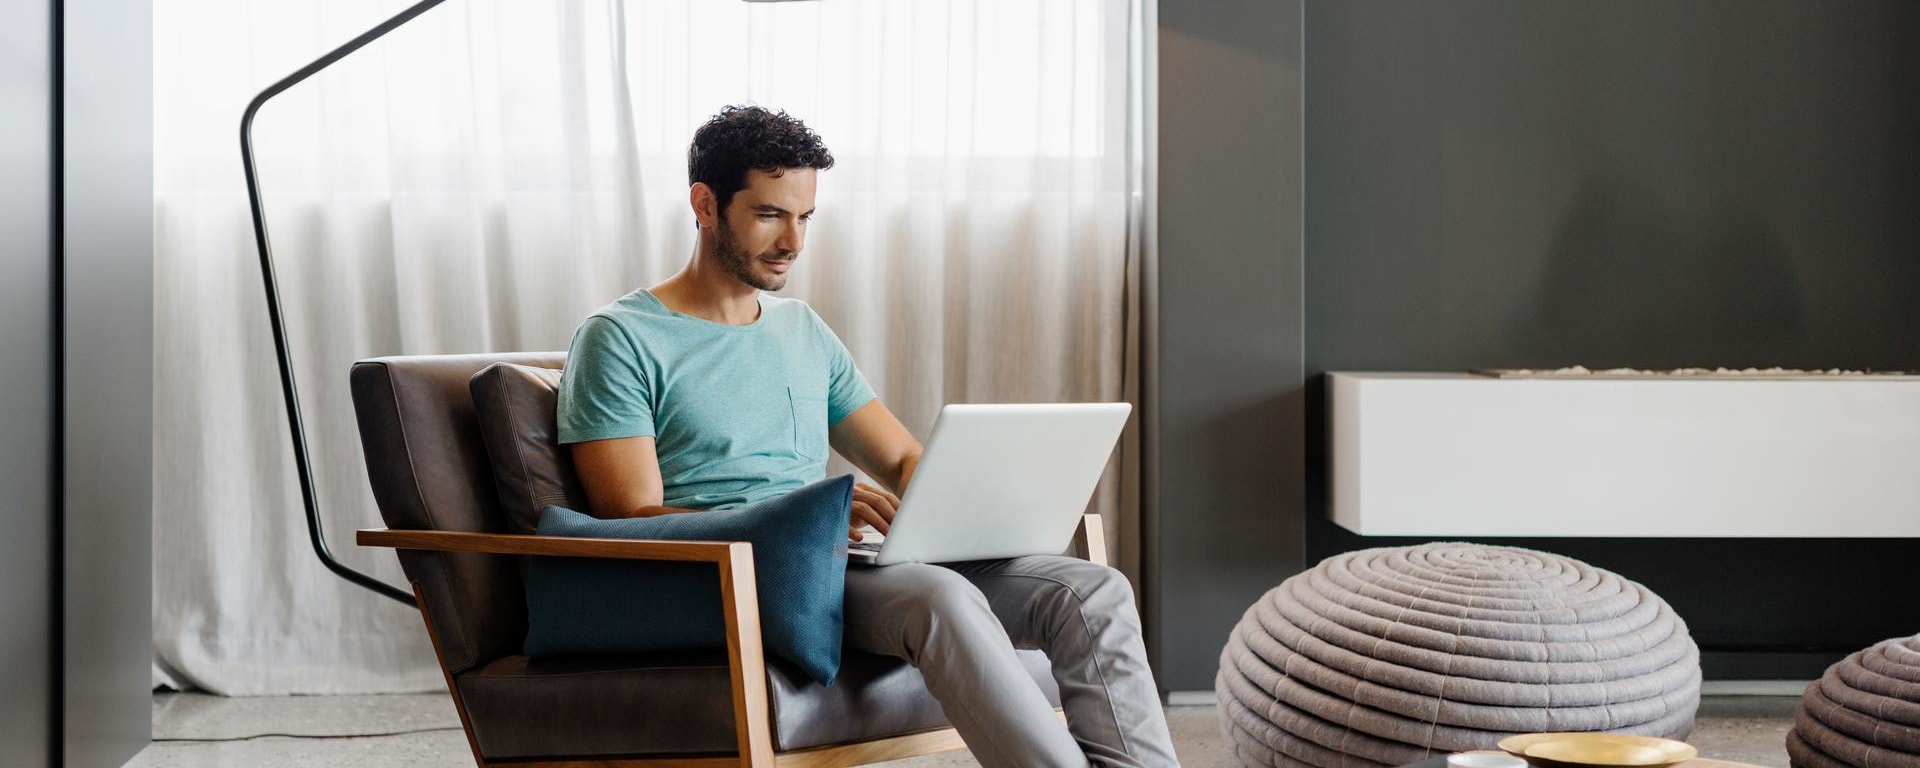 Un homme avec un T-shirt bleu est assis chez lui devant son ordinateur portable et se connecte à son service de banque en ligne.